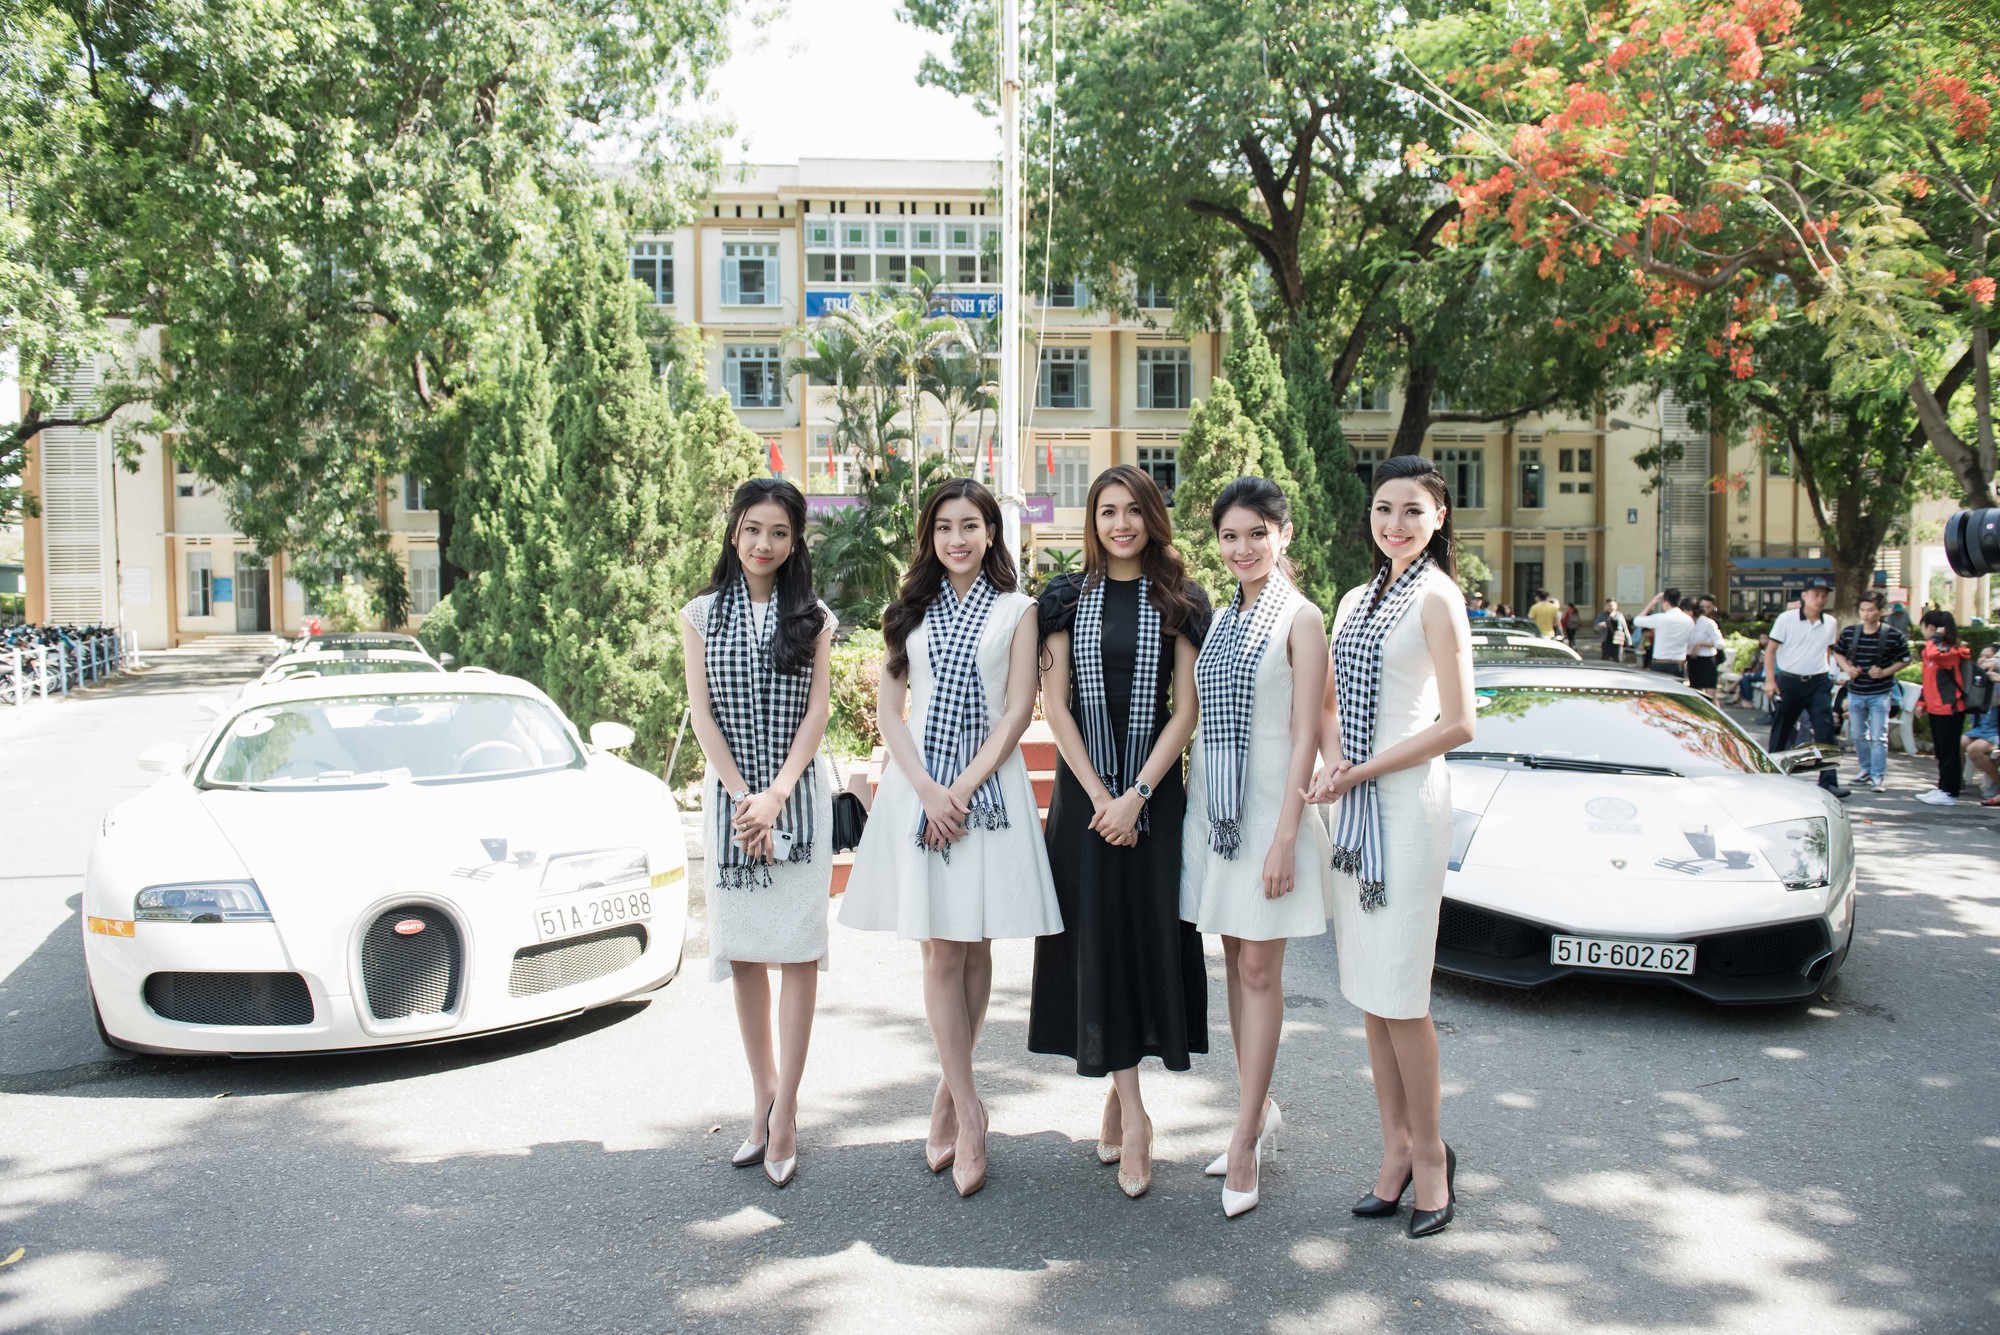 Hoa hậu Đỗ Mỹ Linh khoe dáng cùng Á hậu Thùy Dung bên siêu xe 50 tỷ đồng - Ảnh 1.